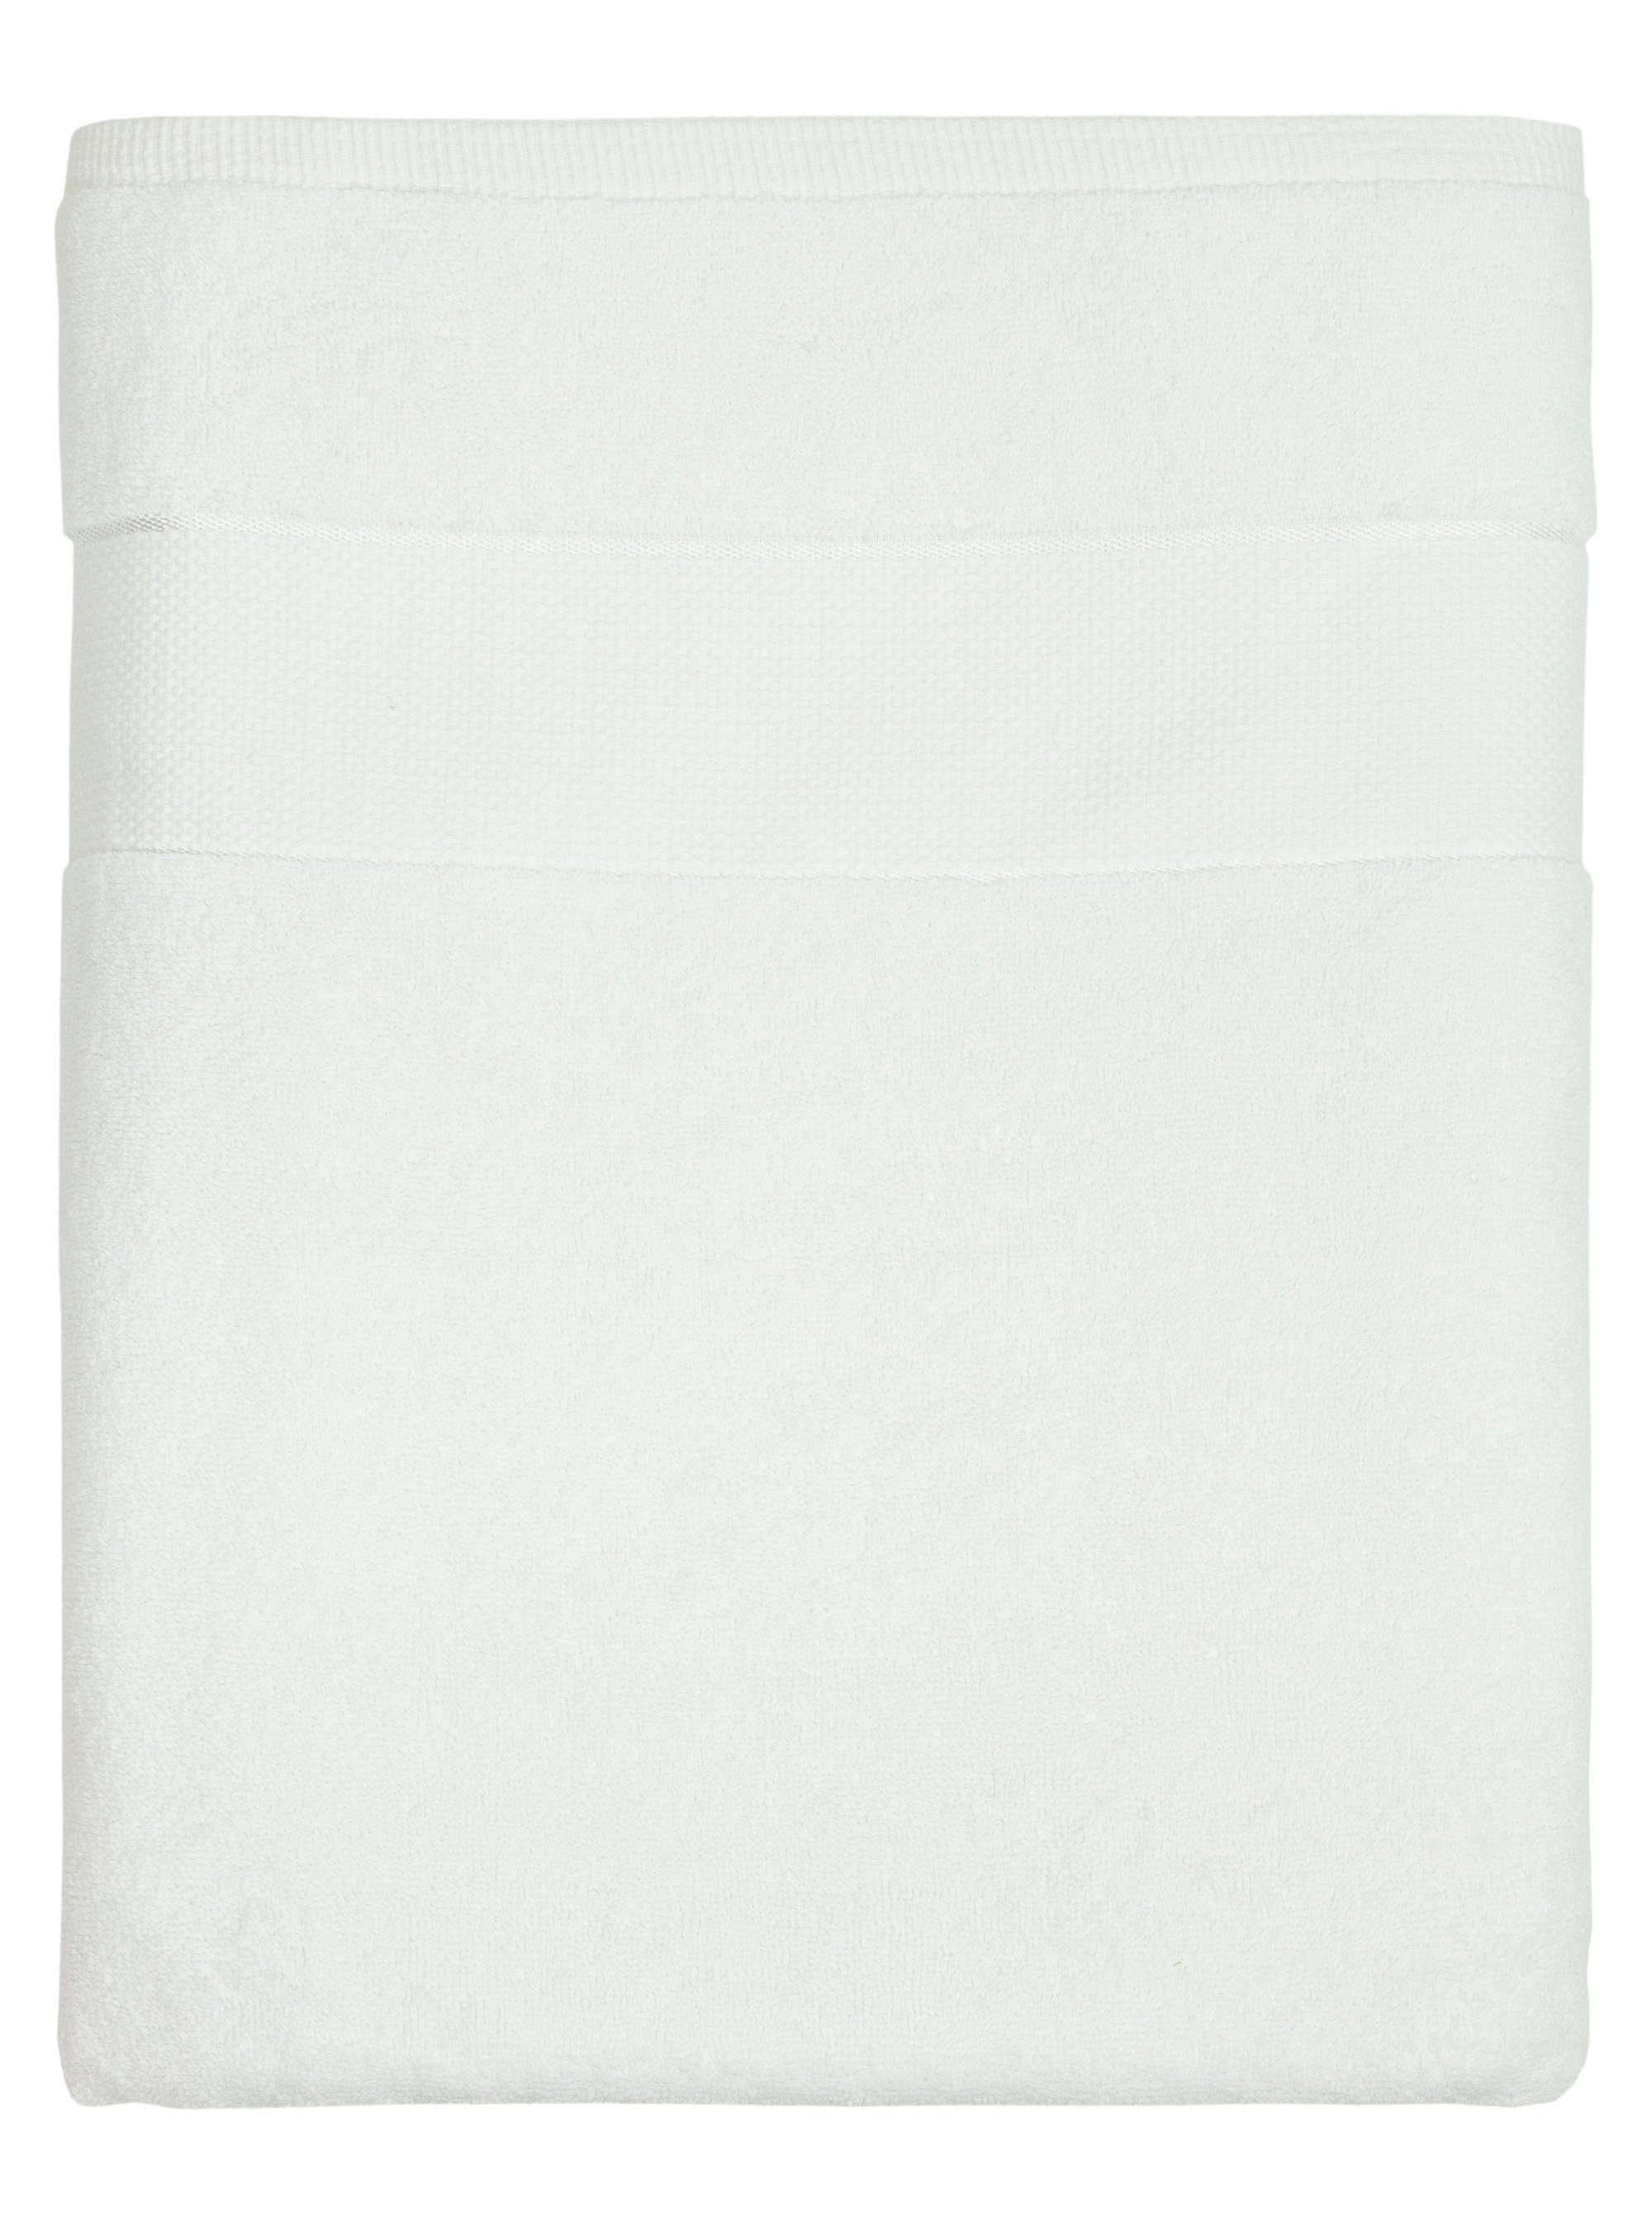 BANANALU Saunatuch XL - XXL 100x180cm 100% Baumwolle 600g/m2 Frottiertuch Großes Badetuch, Baumwolle (1-St) White